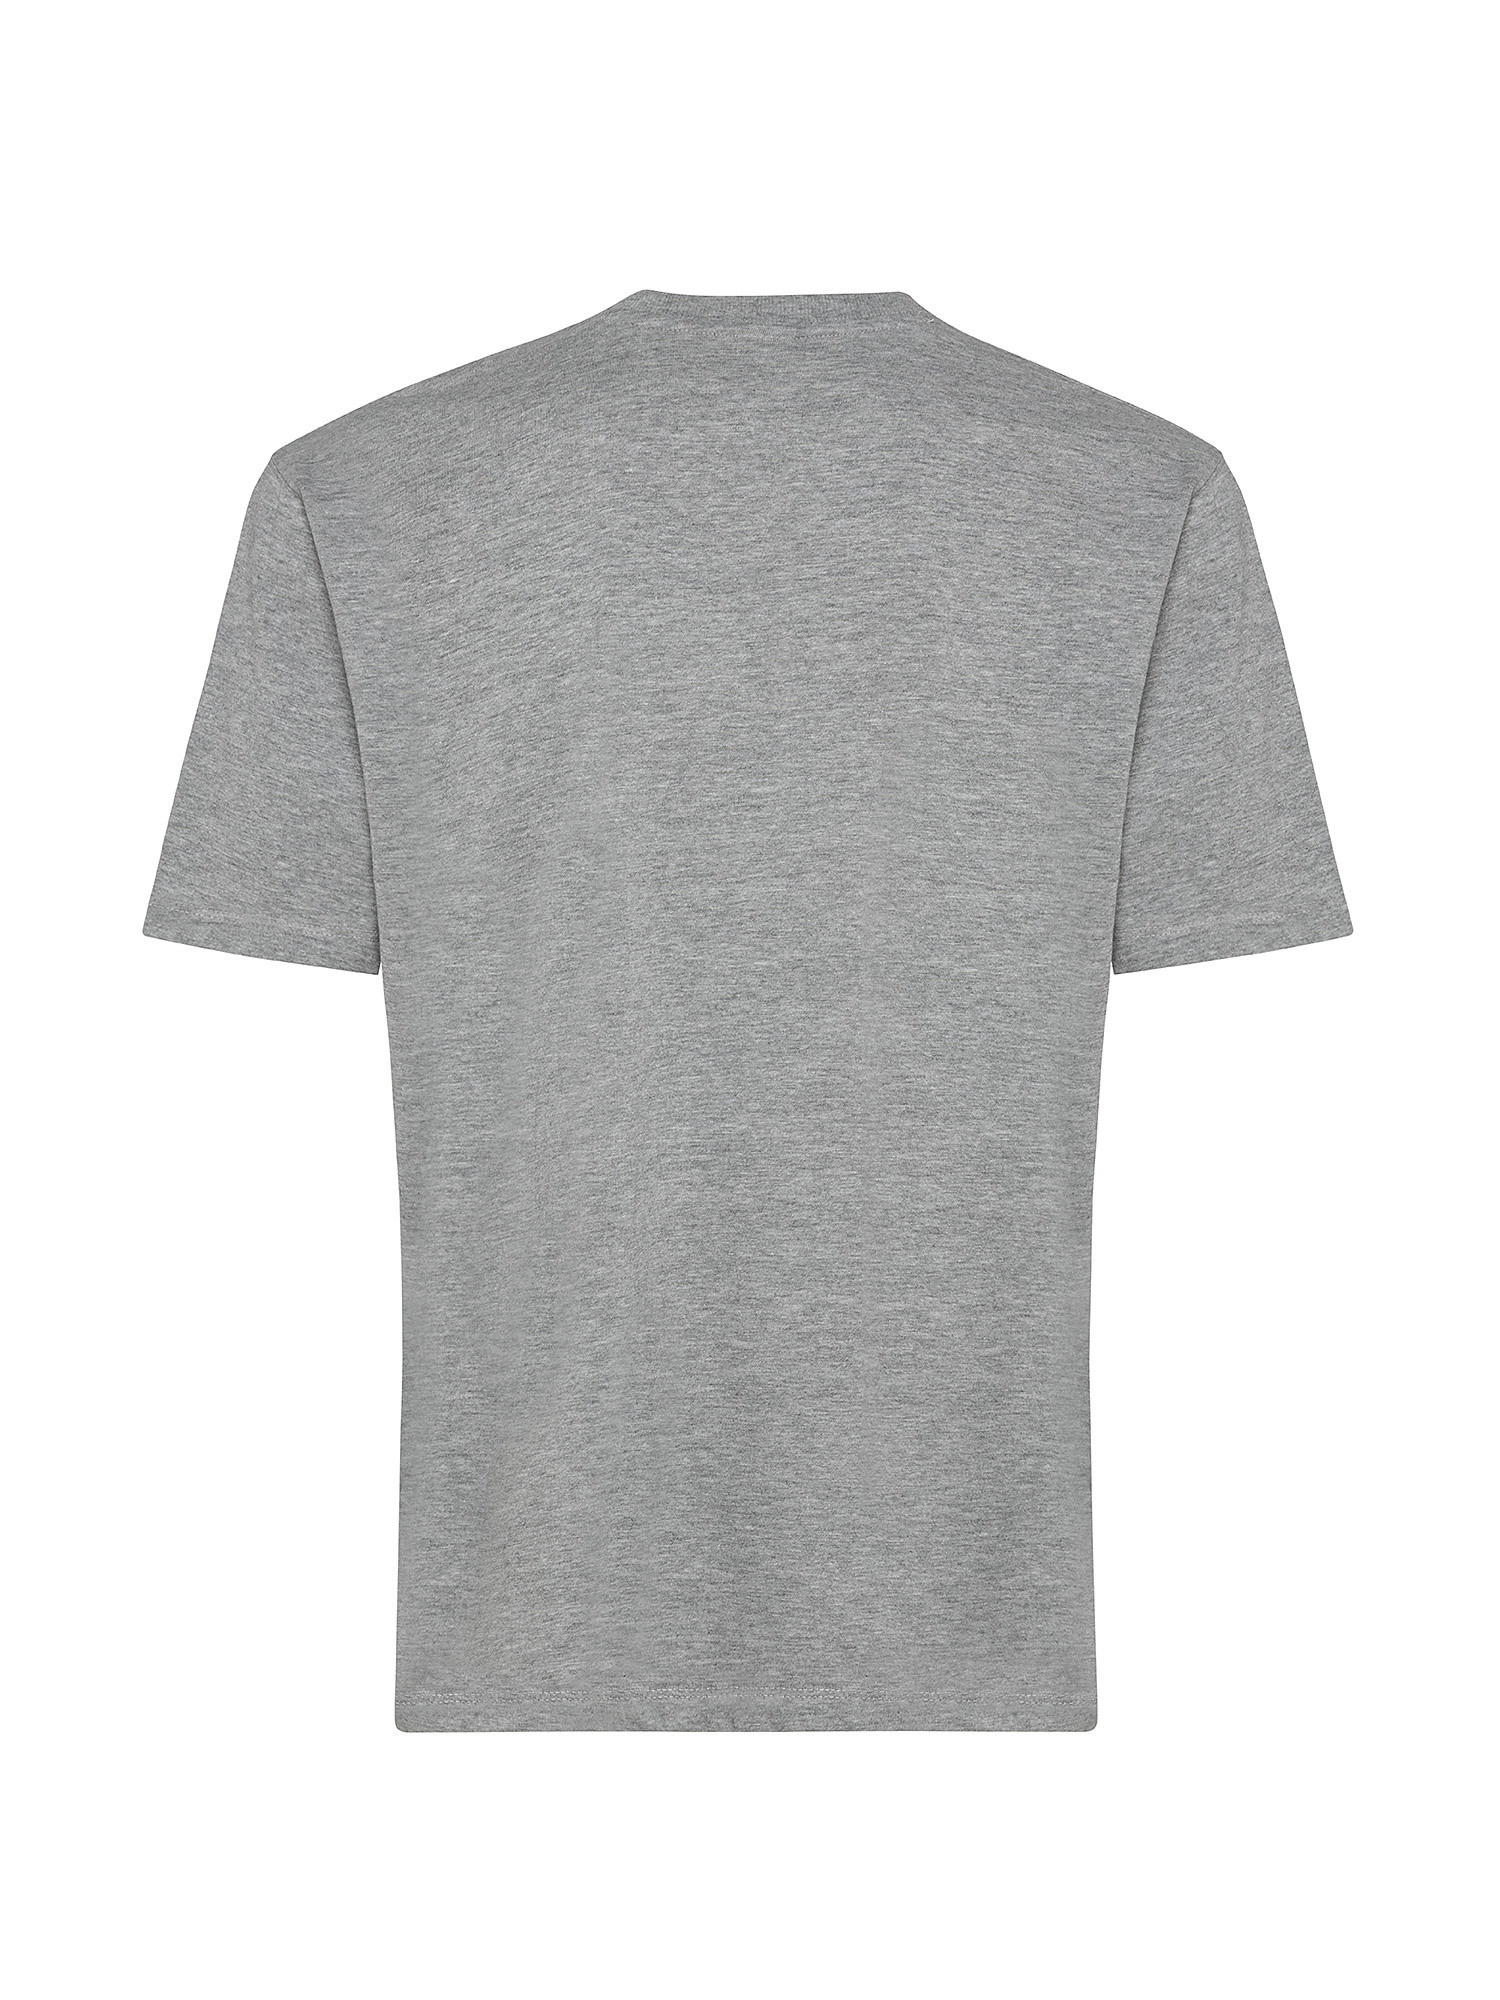 Tony Baseball T-Shirt, Grey, large image number 1